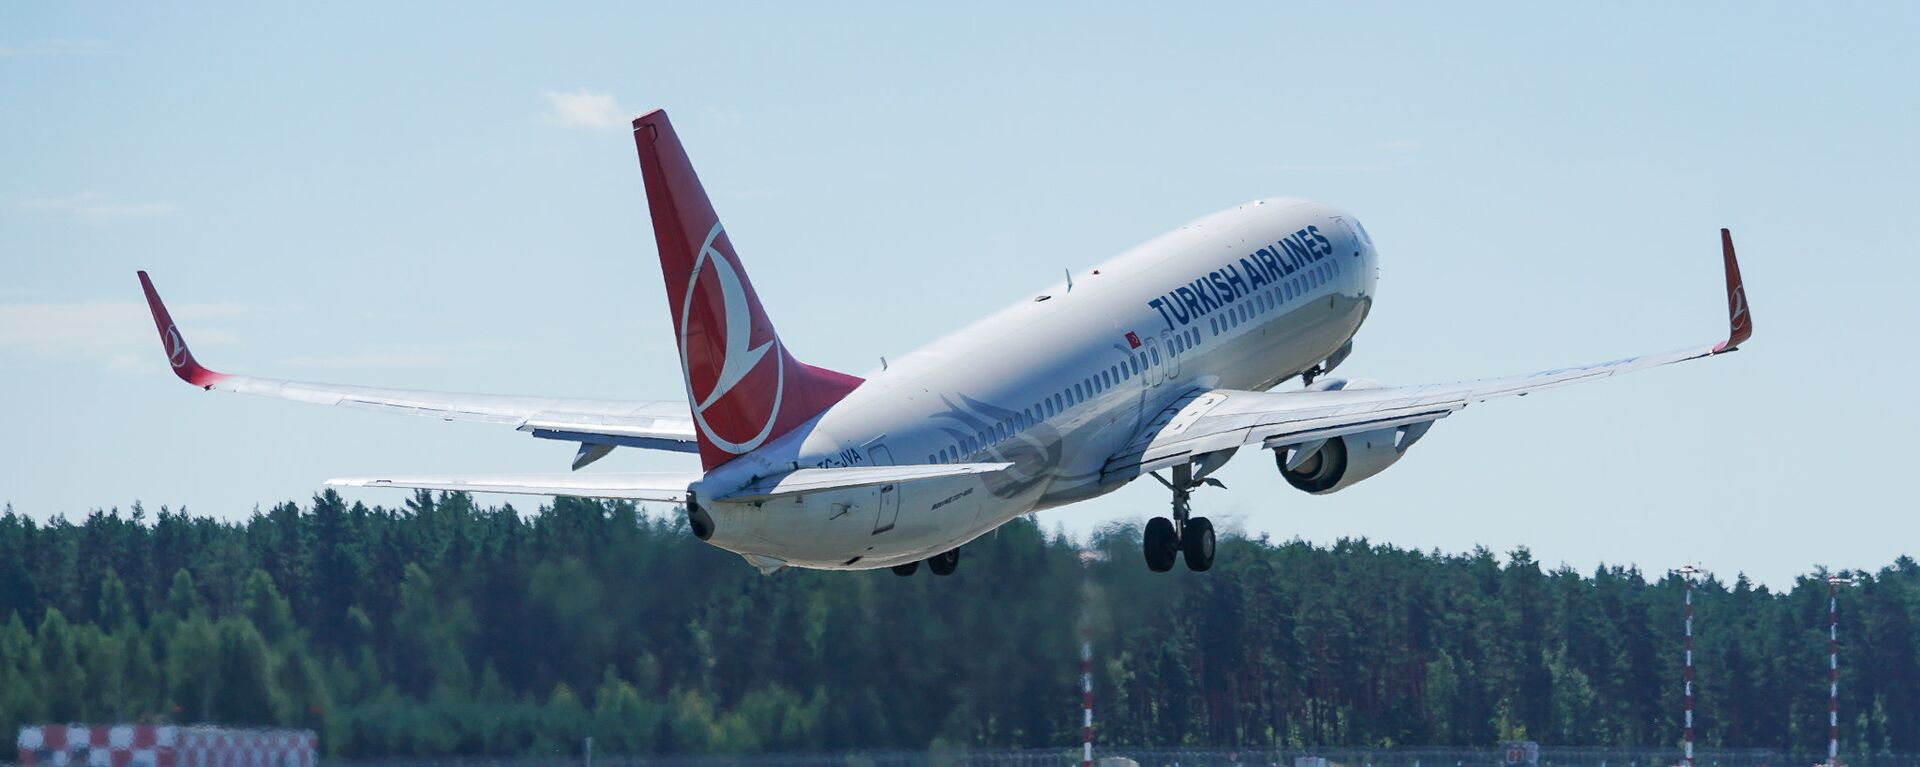 Самолет Boeing 737 авиакомпании Turkish Airlines взлетает из аэропорта Рига - Sputnik Латвия, 1920, 09.11.2021